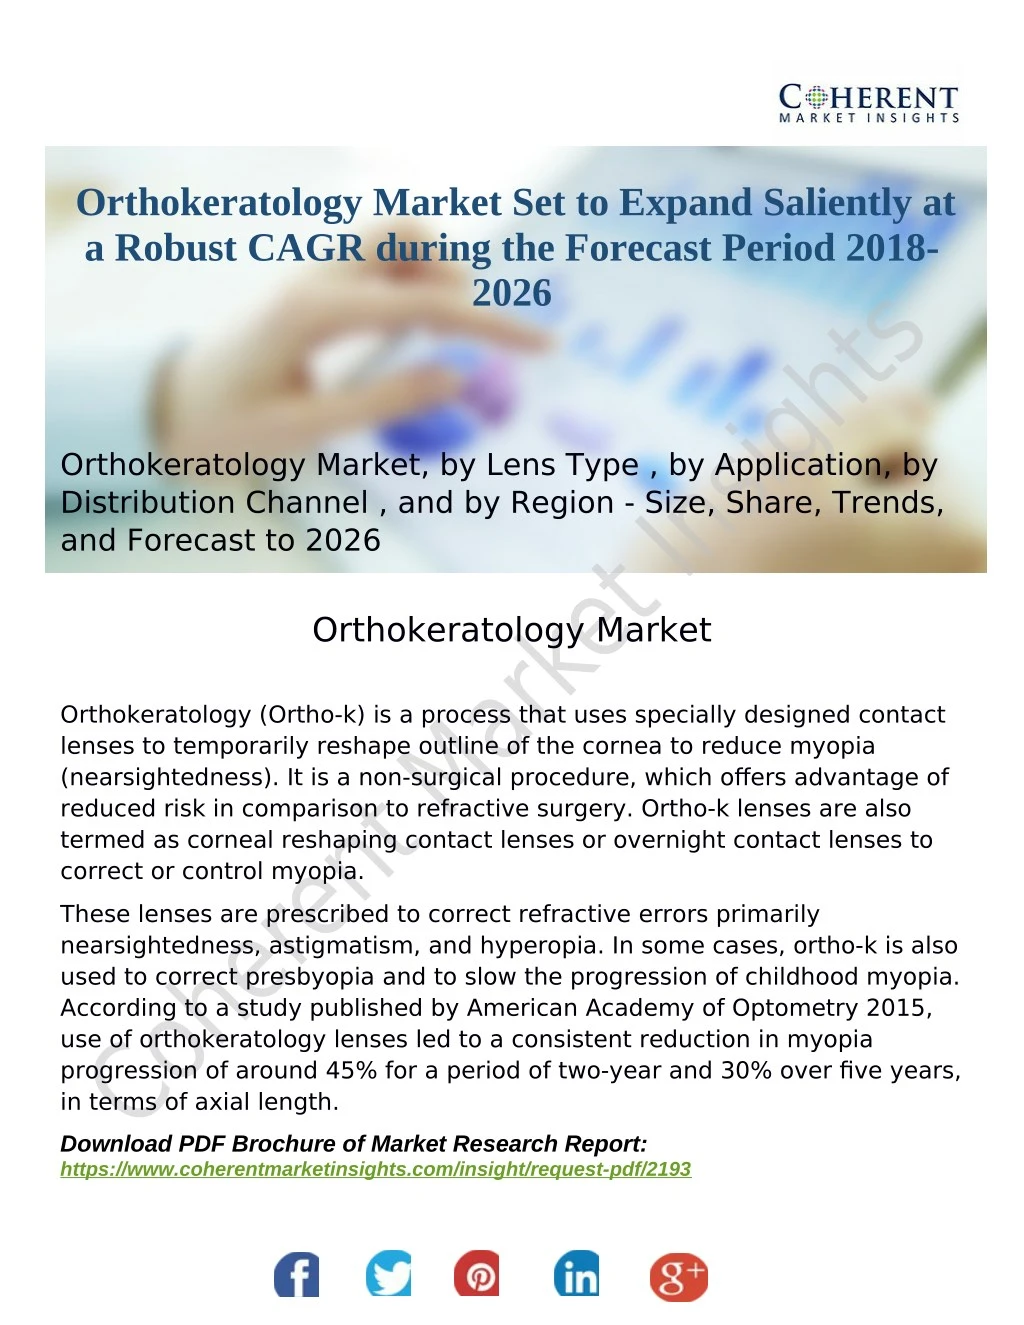 orthokeratology market set to expand saliently